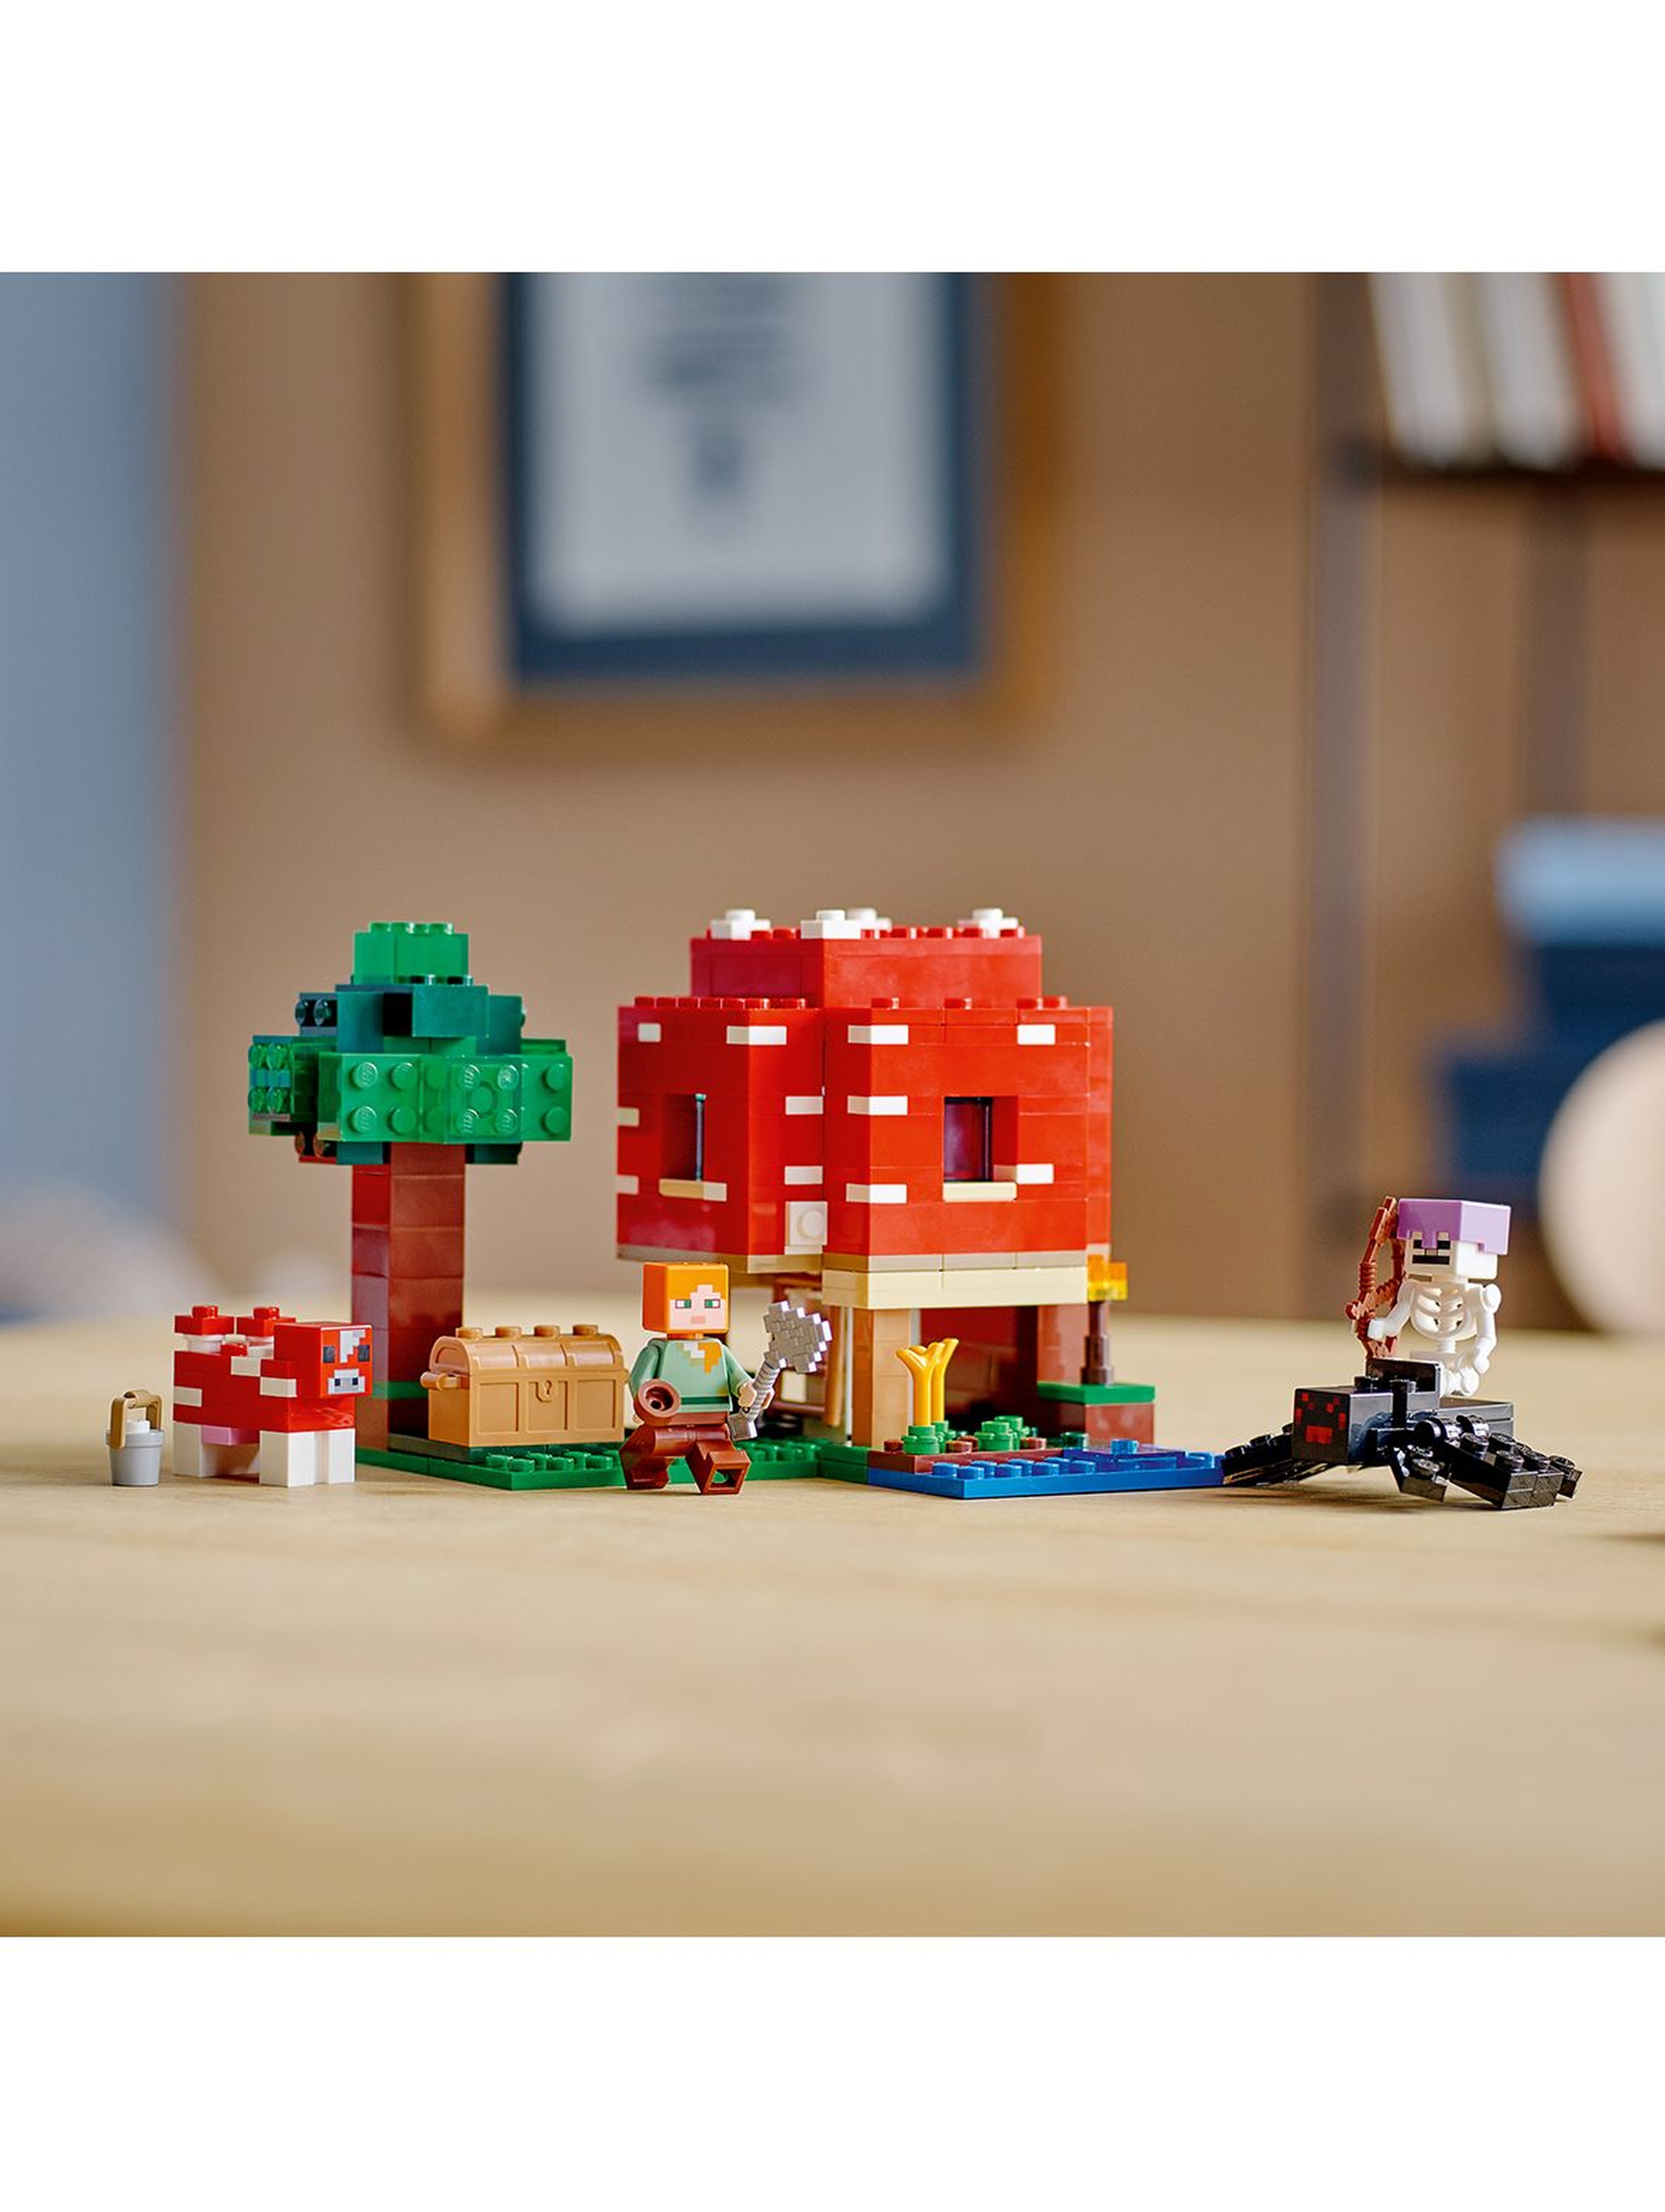 LEGO Minecraft 21179 Dom w grzybie wiek 8+